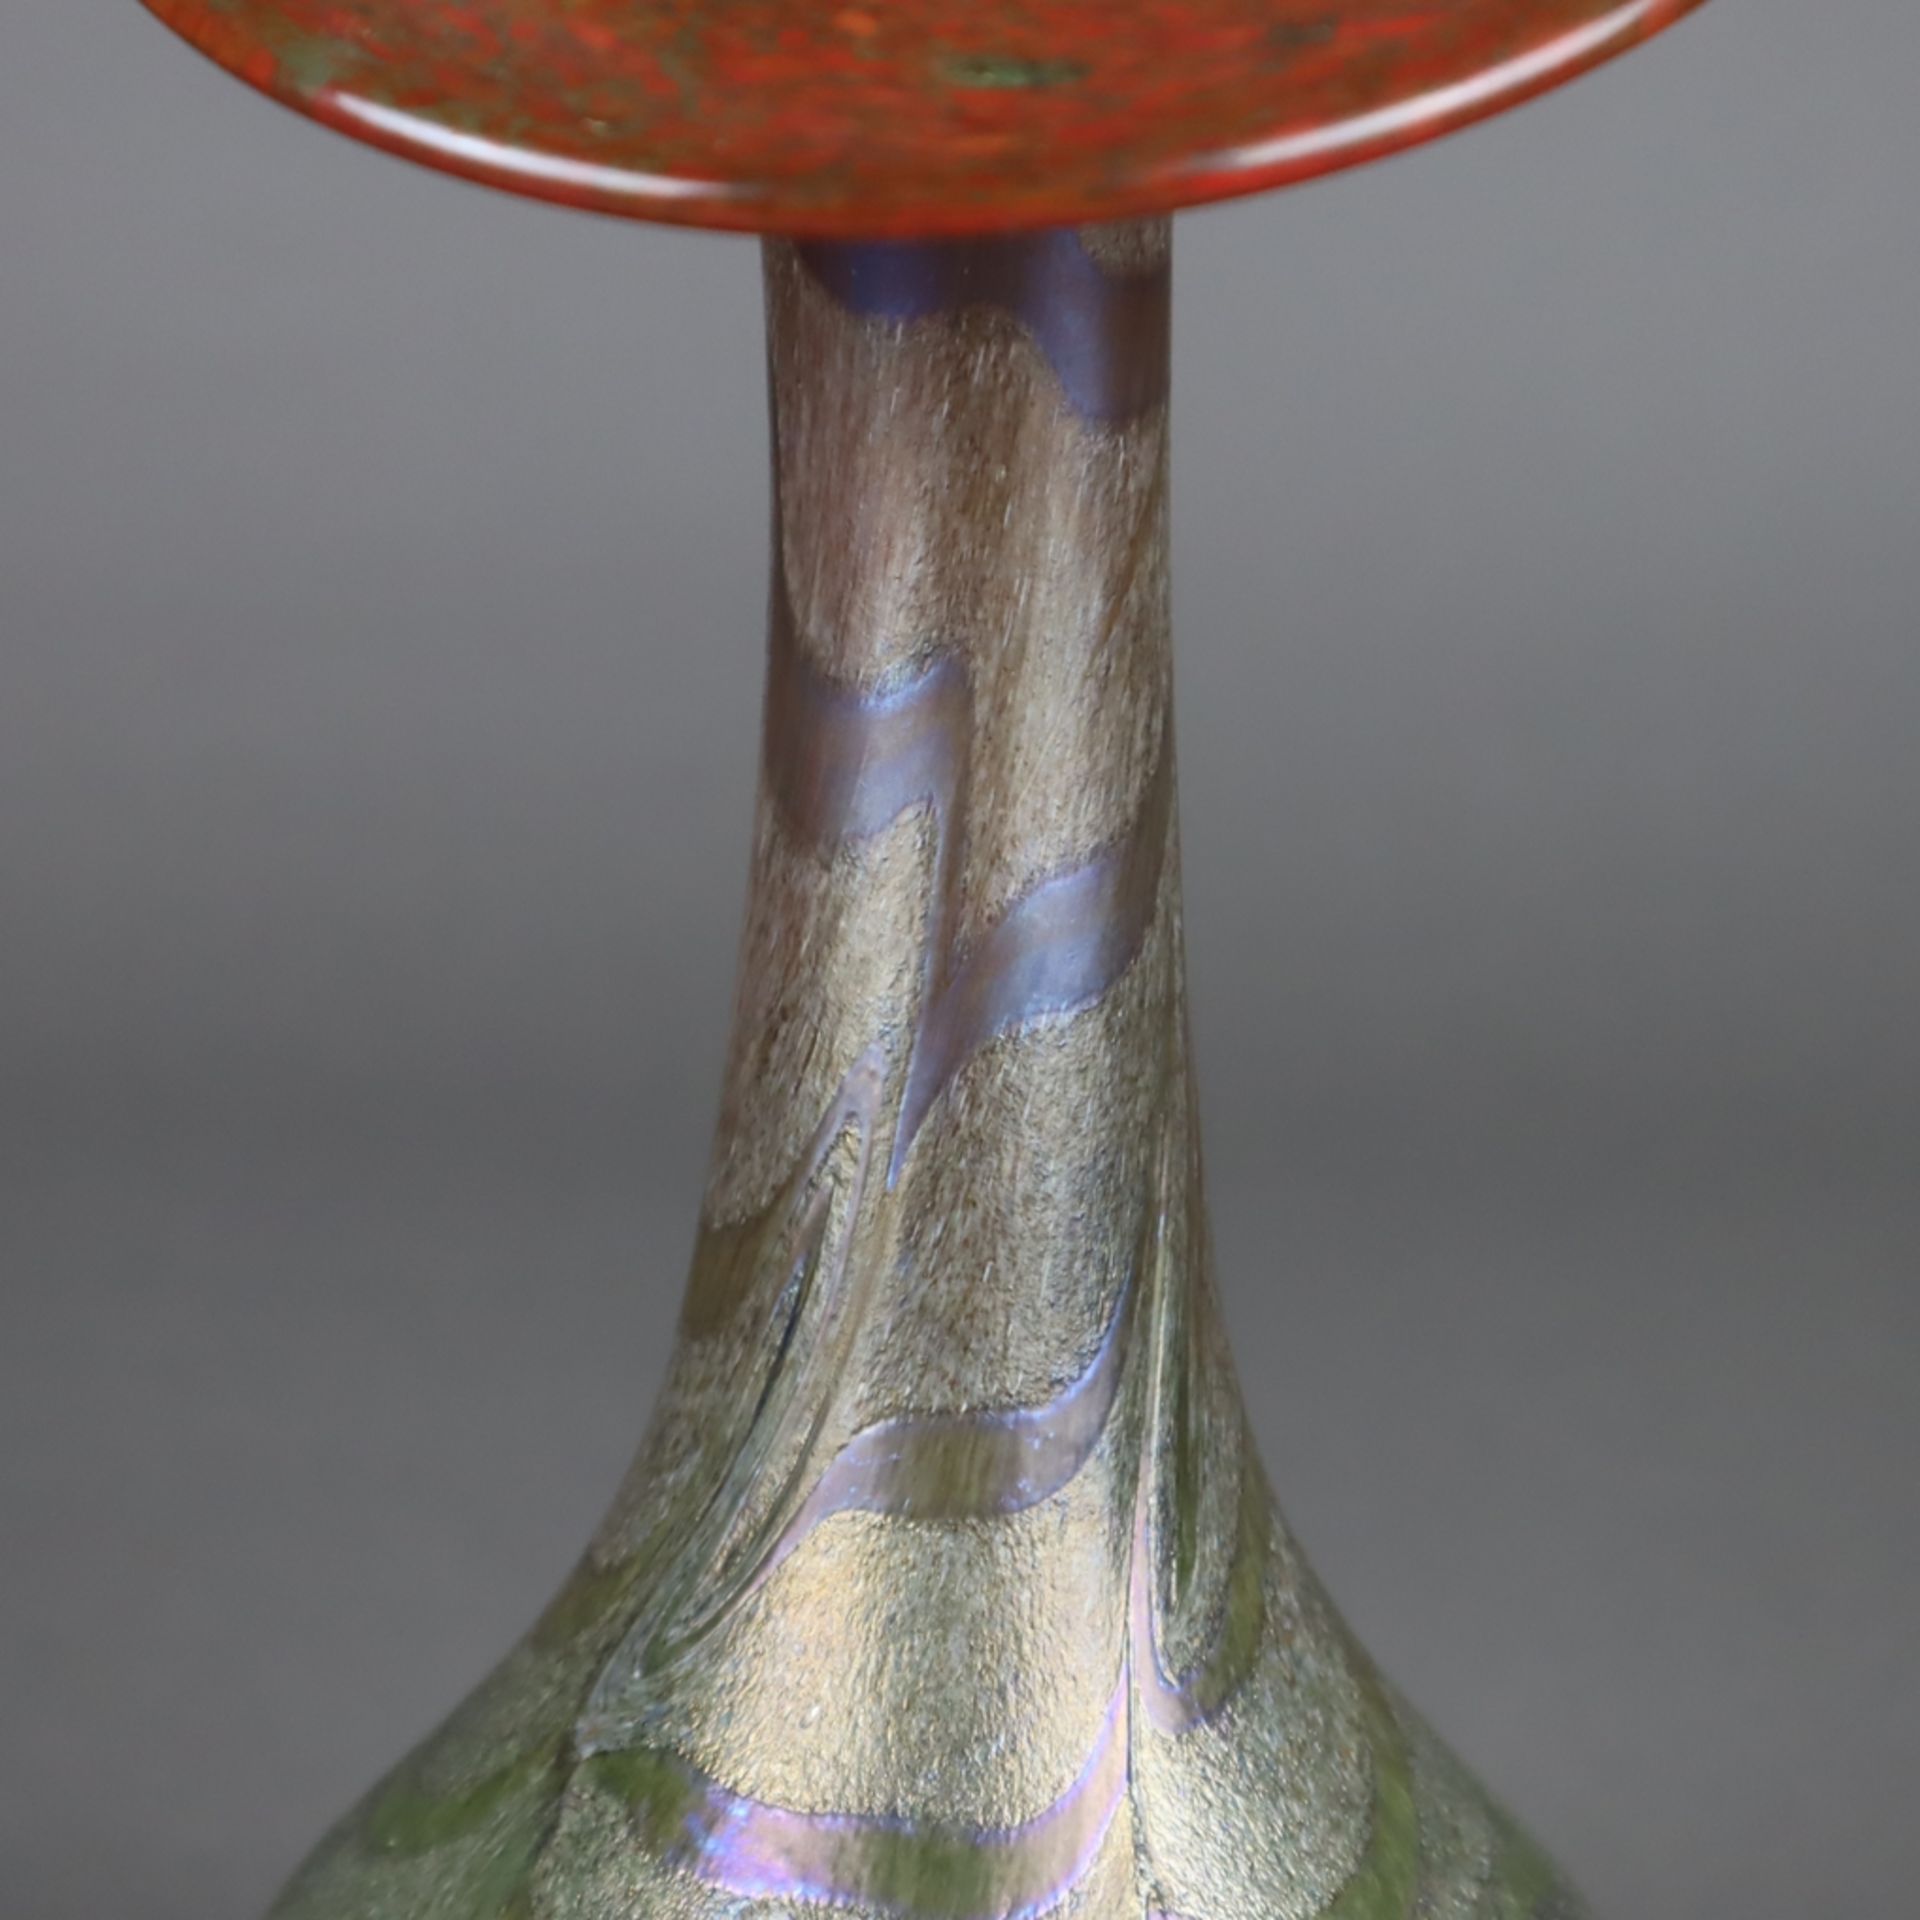 Jugendstil-Vase - irisiertes Glas mit farbigen Pulvereinschmelzungen, gebauchter Korpus mit langem - Bild 3 aus 8